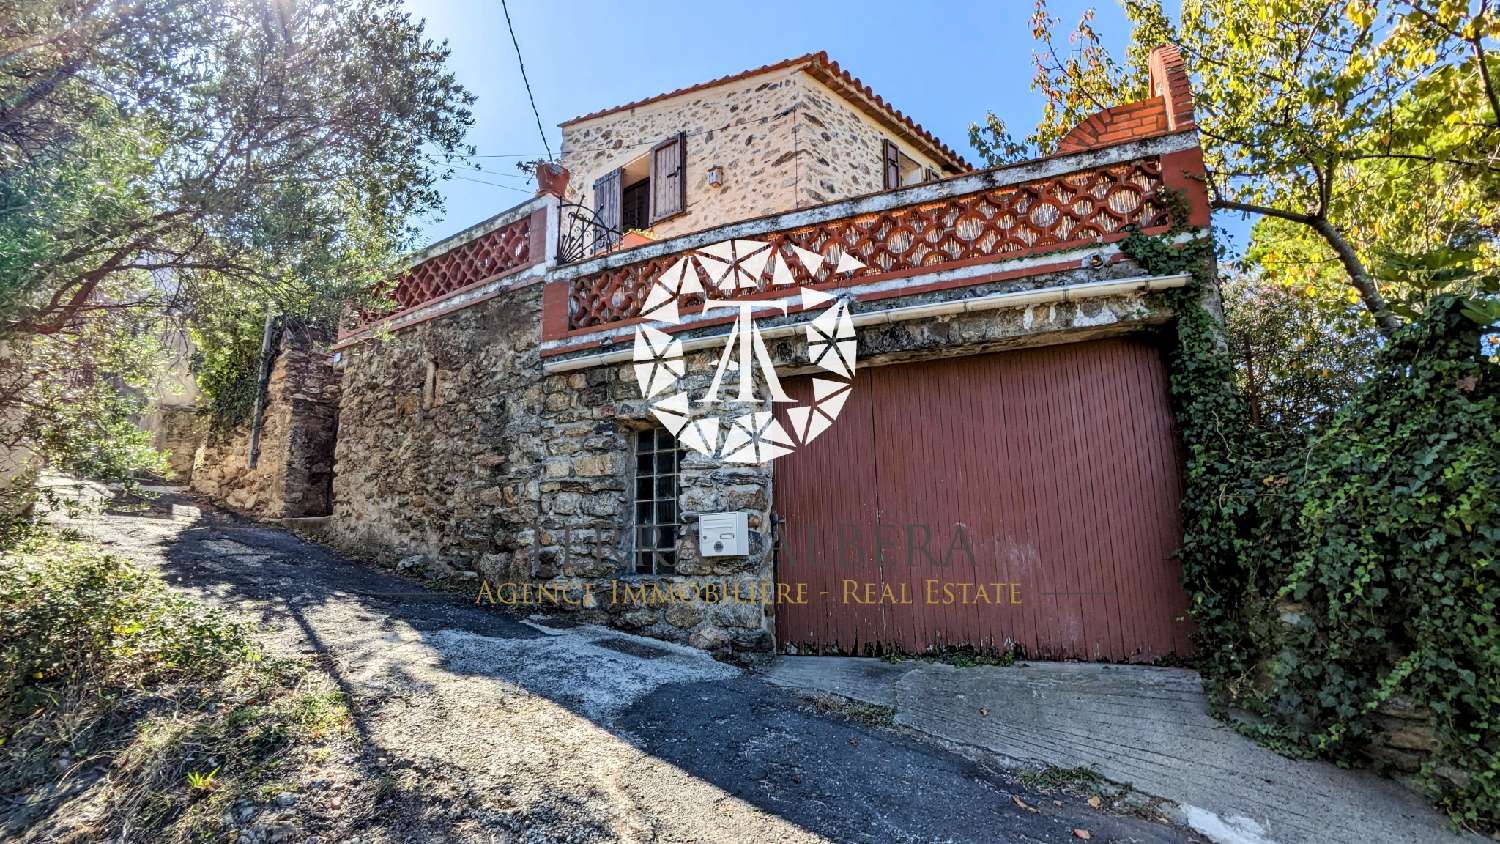  à vendre maison de village Villelongue-dels-Monts Pyrénées-Orientales 1